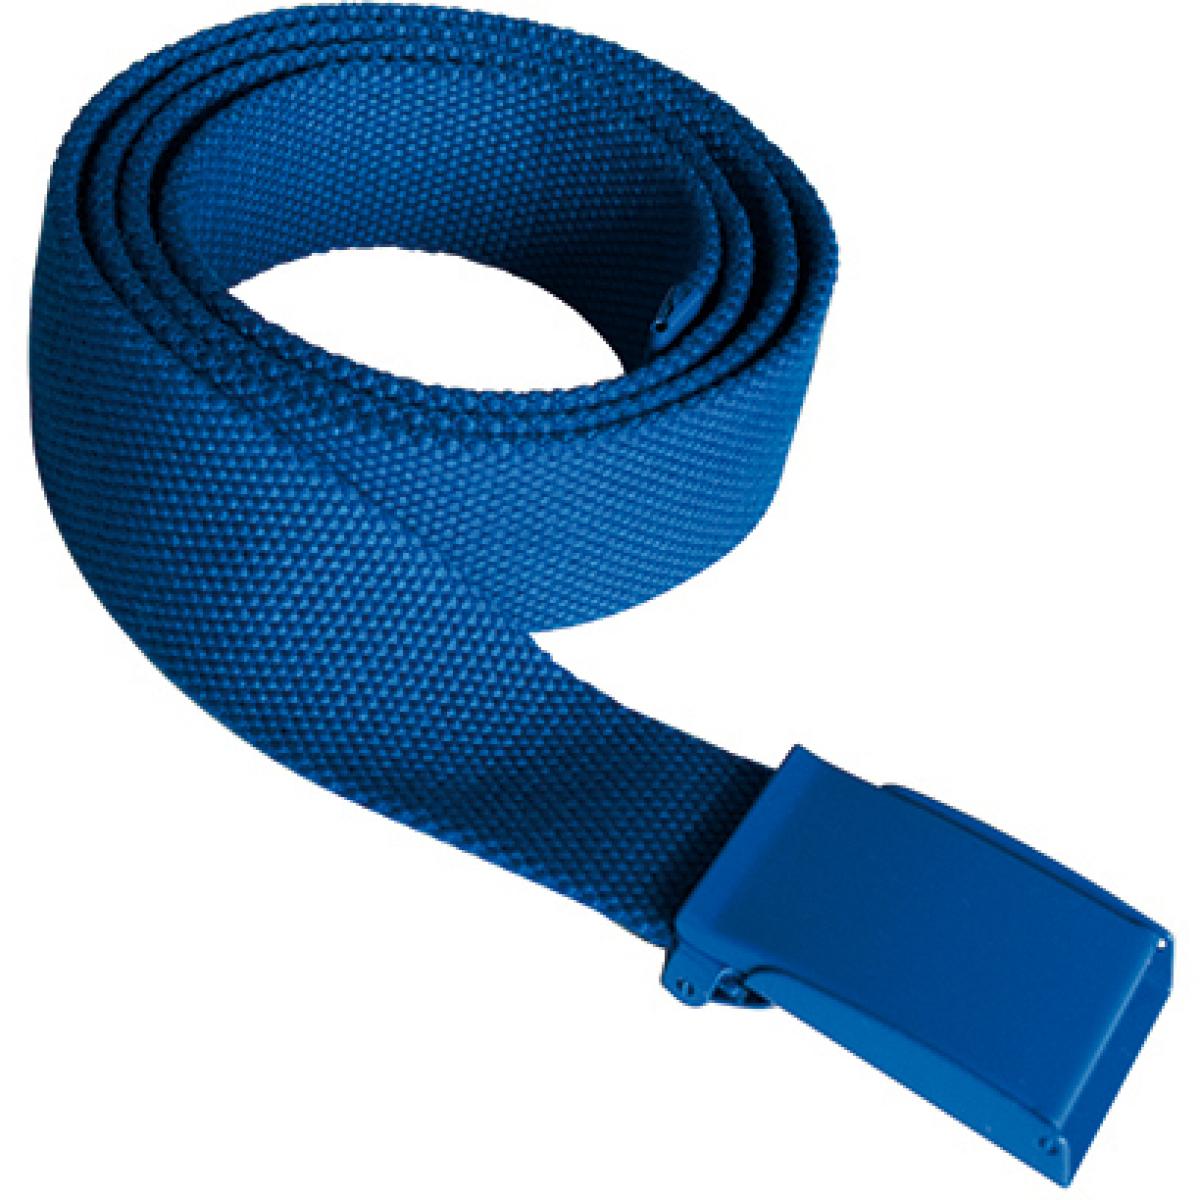 Hersteller: Korntex Herstellernummer: KXPYB Artikelbezeichnung: Polyestergürtel, Breite: 4 cm, Länge inkl. Schnalle: 130 cm Farbe: Royal Blue